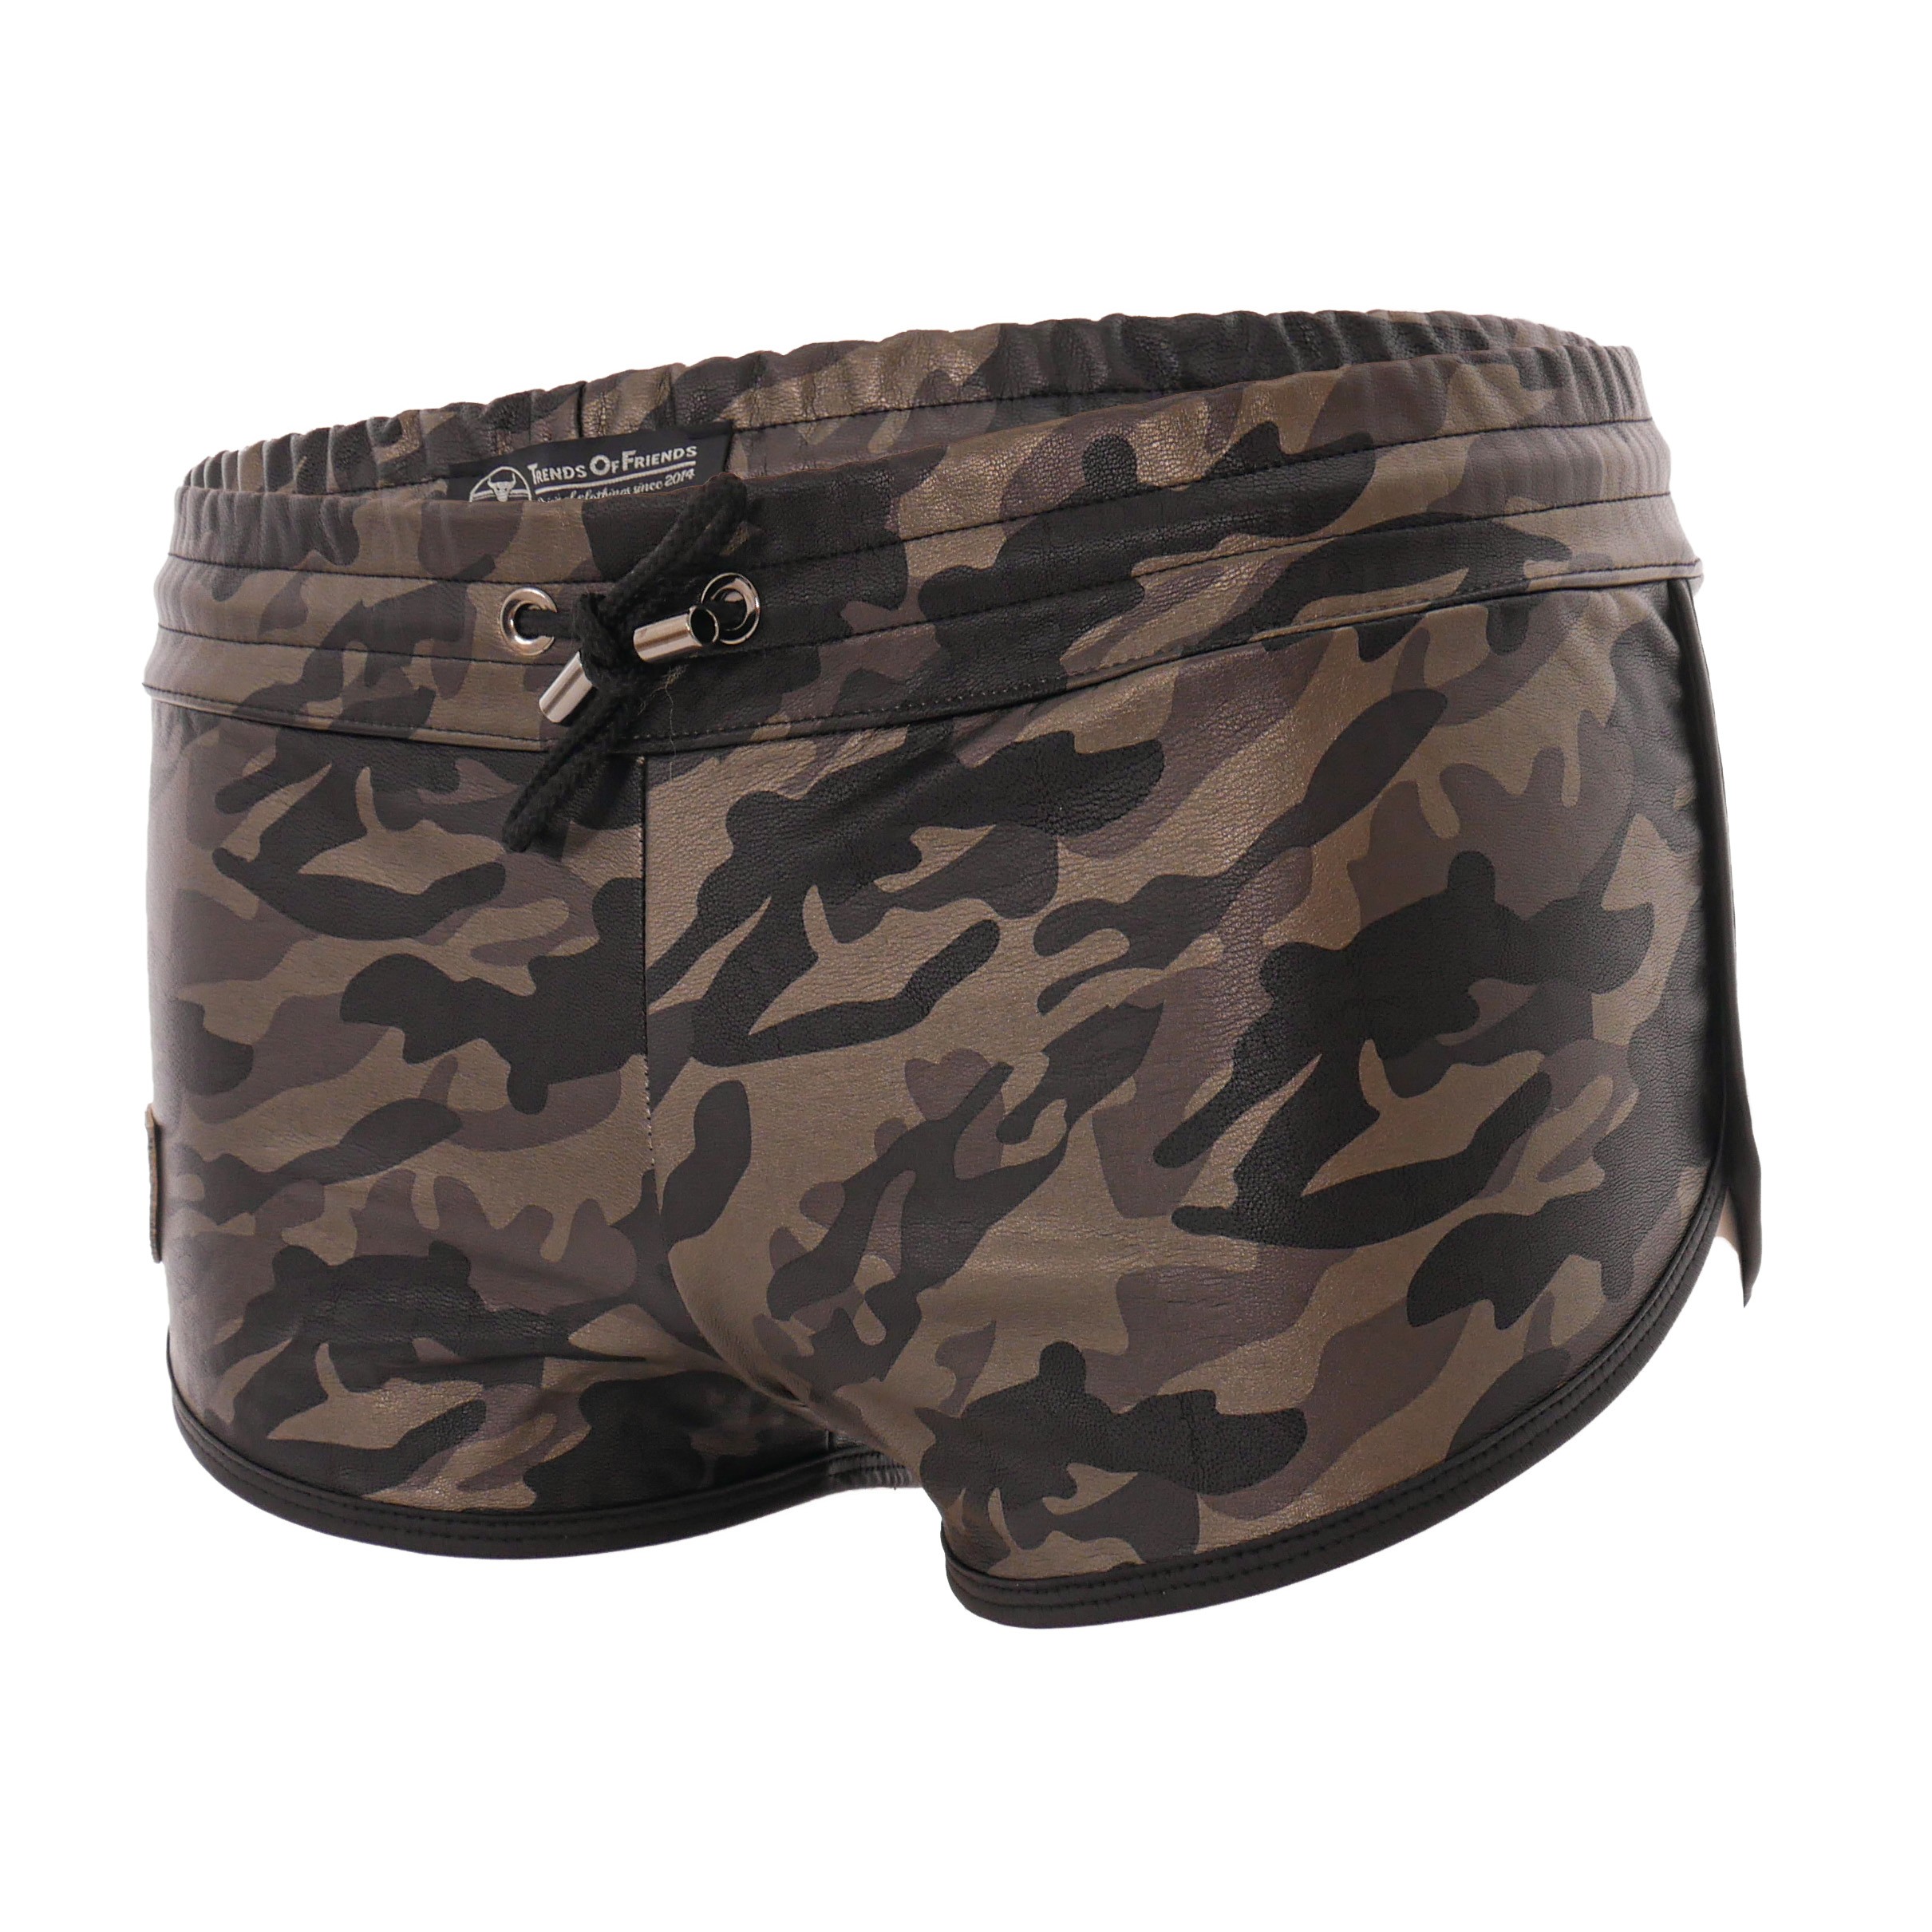 Commando shorts – sundrenchedclothing